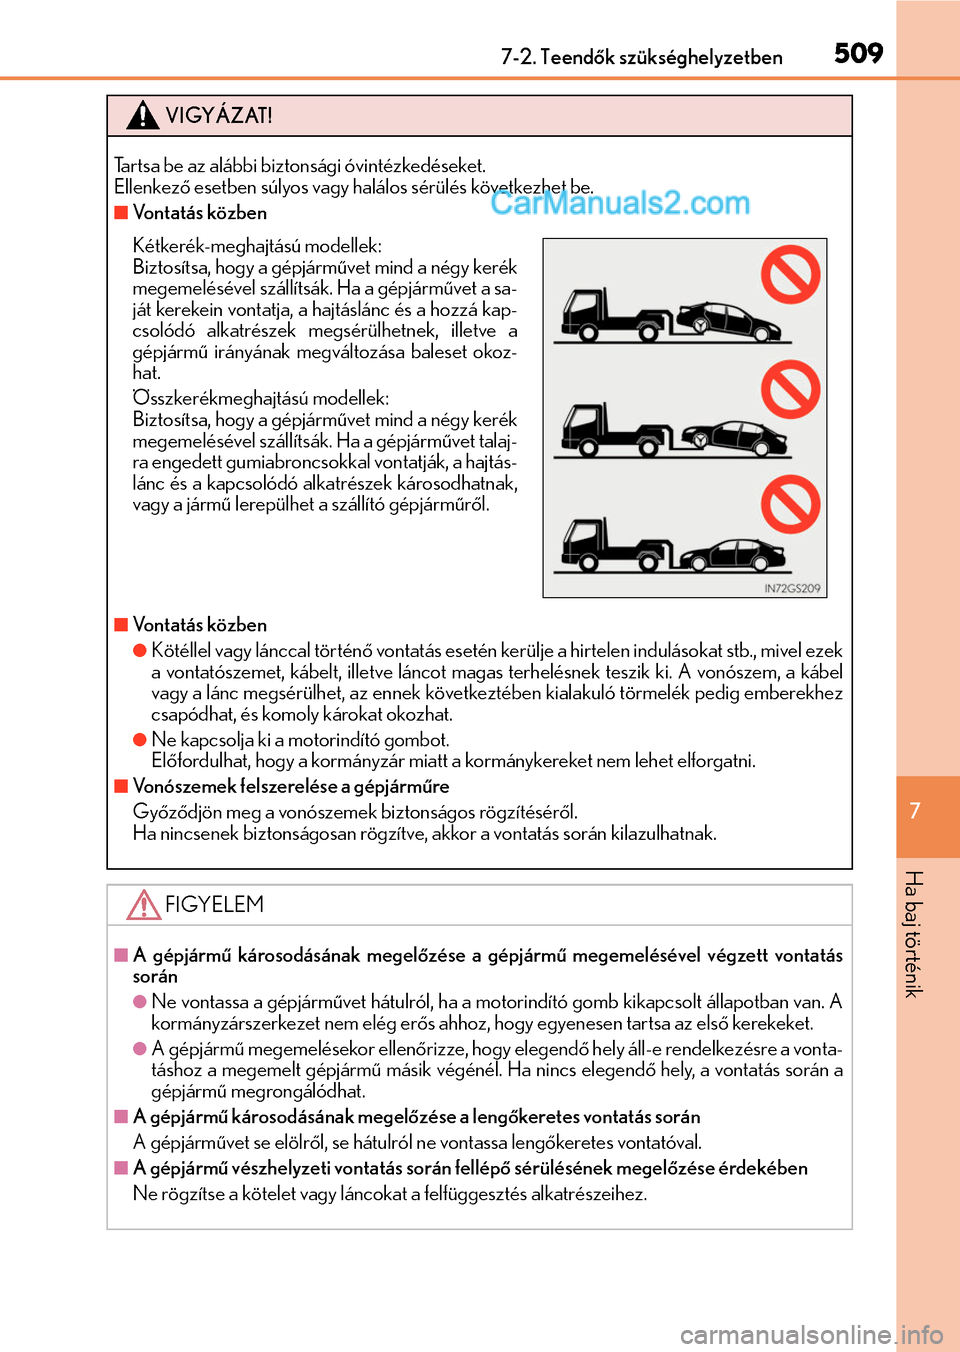 Lexus GS F 2015  Kezelési útmutató (in Hungarian) 5097-2. Teendők szükséghelyzetben
7
Ha baj történik
VIGYÁZAT!
Tartsa be az alábbi biztonsági óvintézkedéseket.
Ellenkező esetben súlyos vagy halálos sérülés következhet be.
Vontat